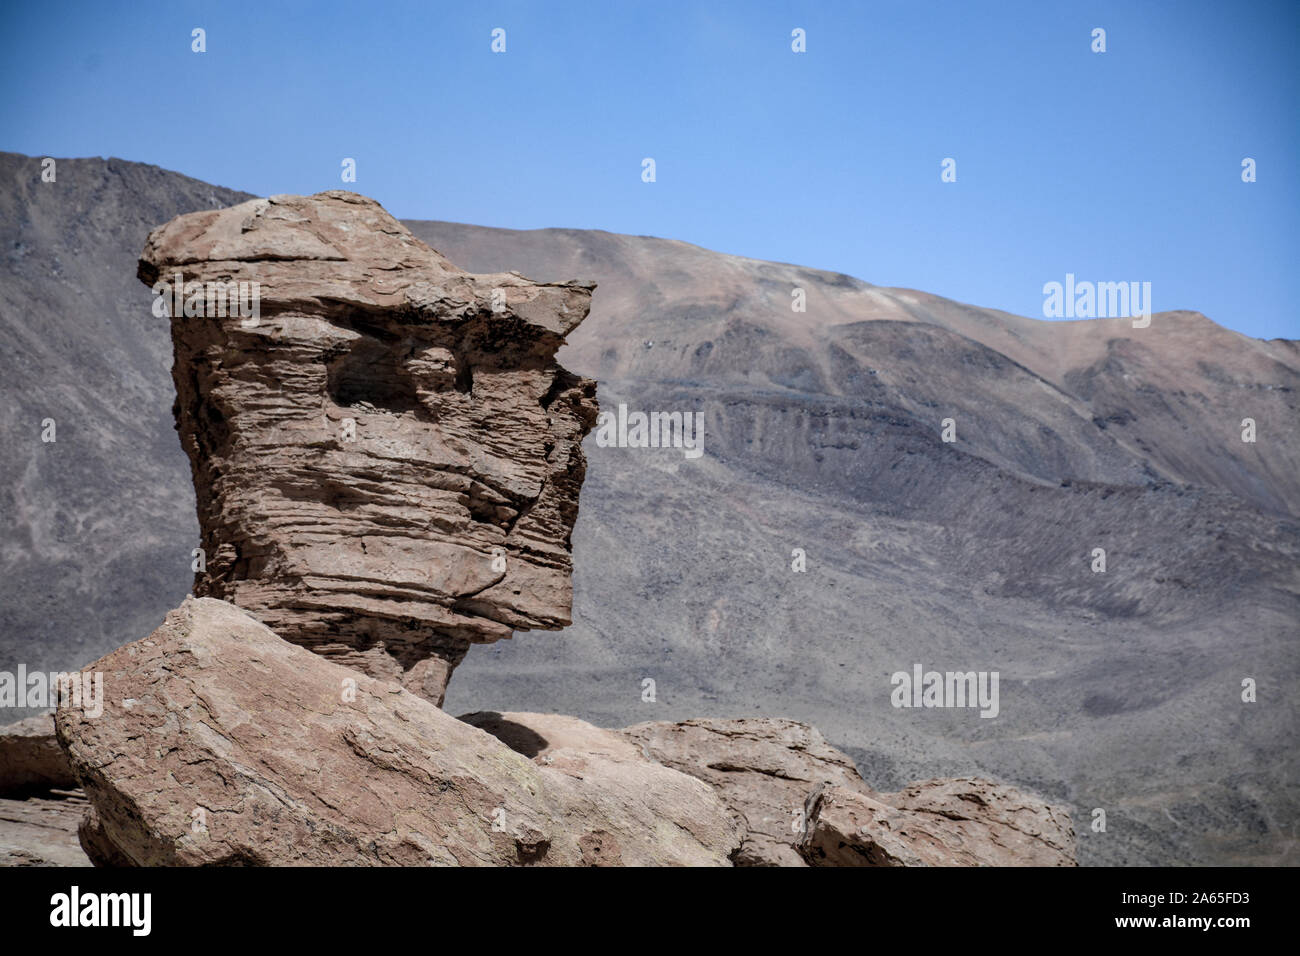 The Uyuni desert in Bolivia Stock Photo